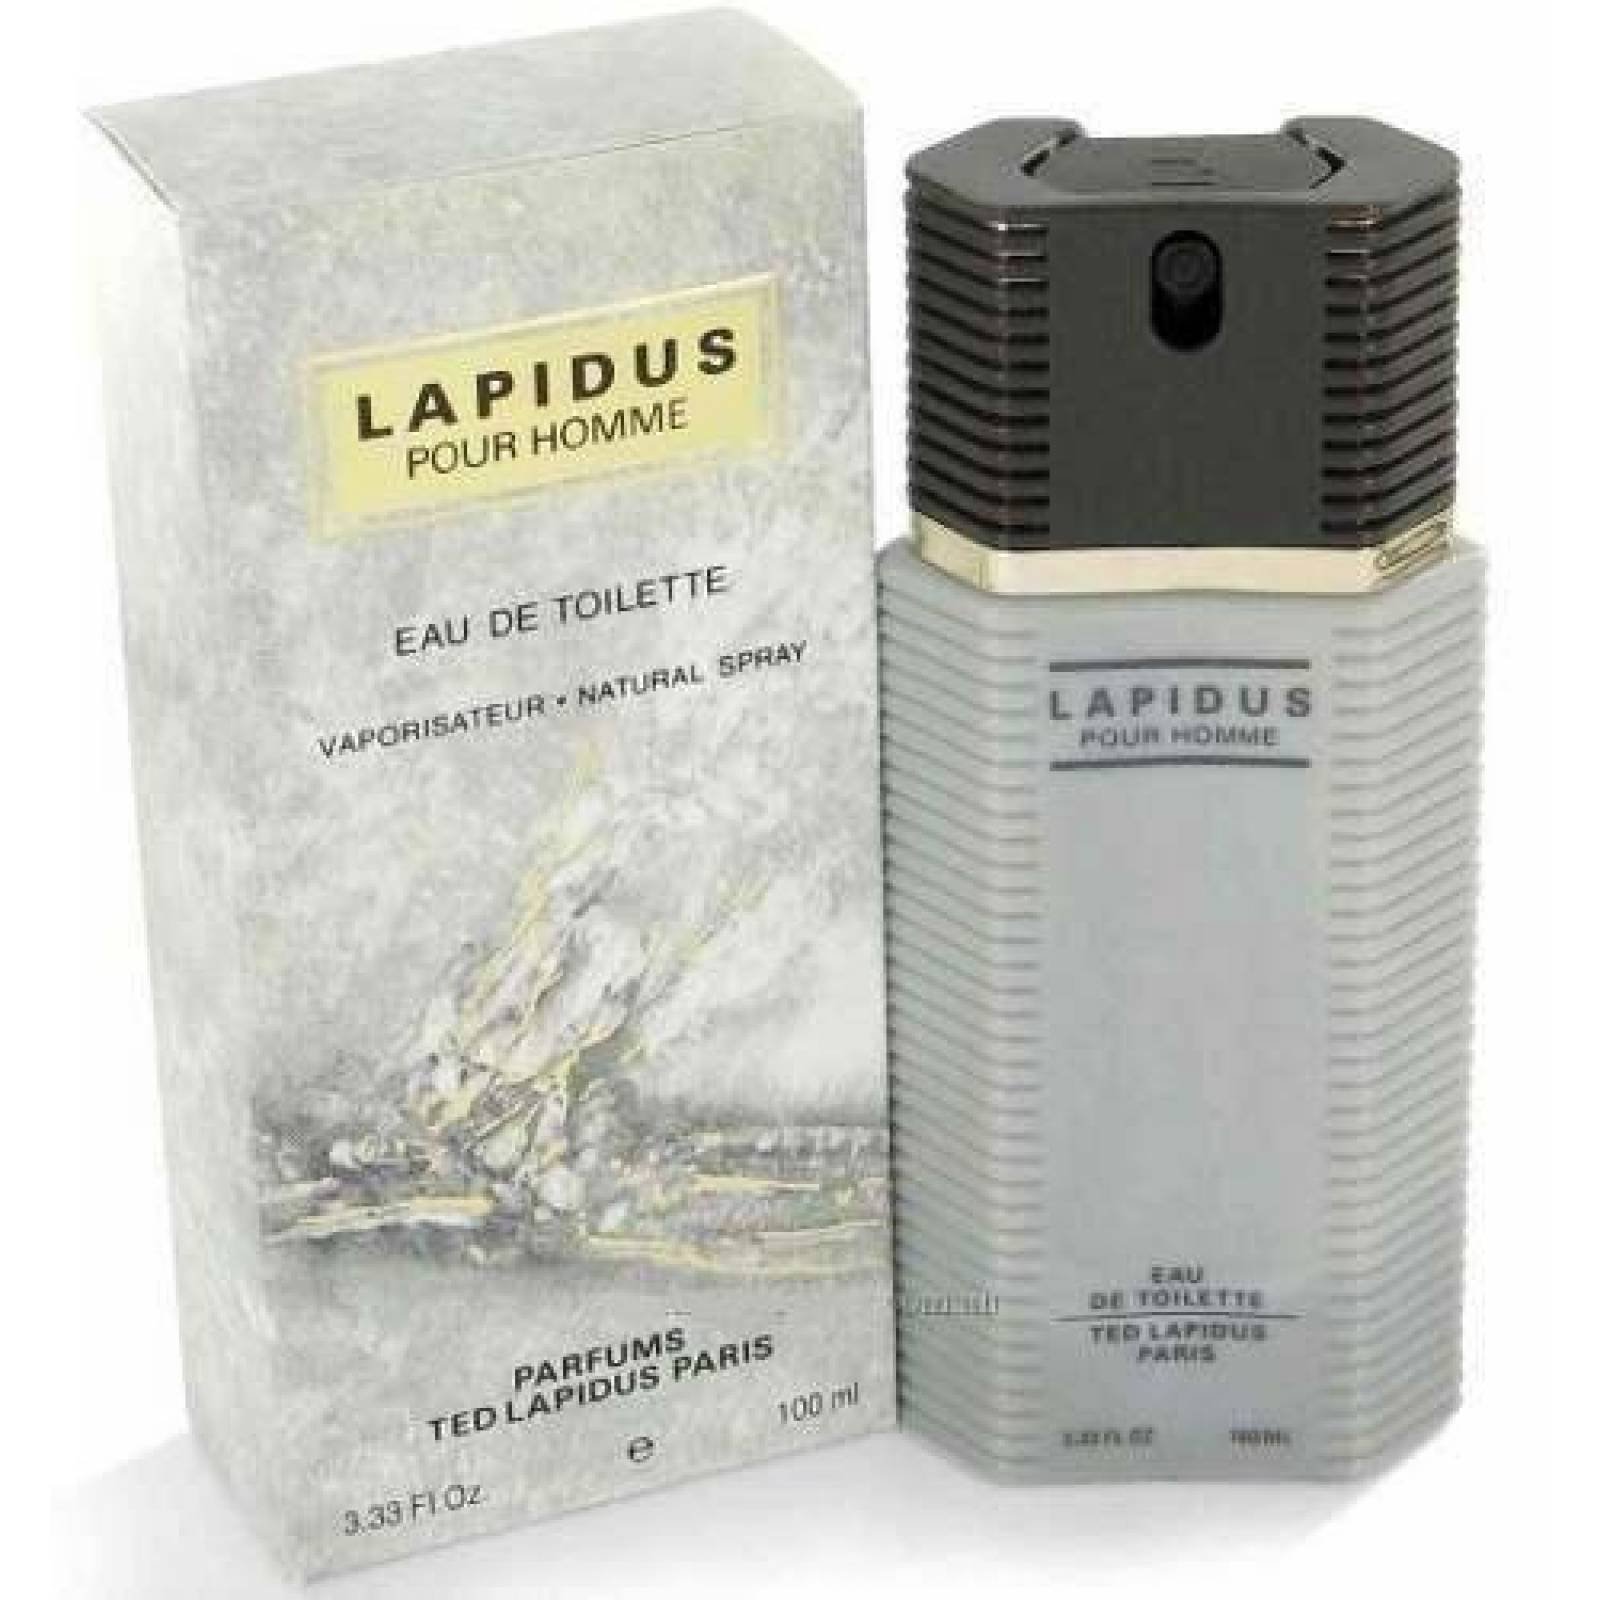 Lapidus Caballero 100 Ml Ted Lapidus Spray - Original